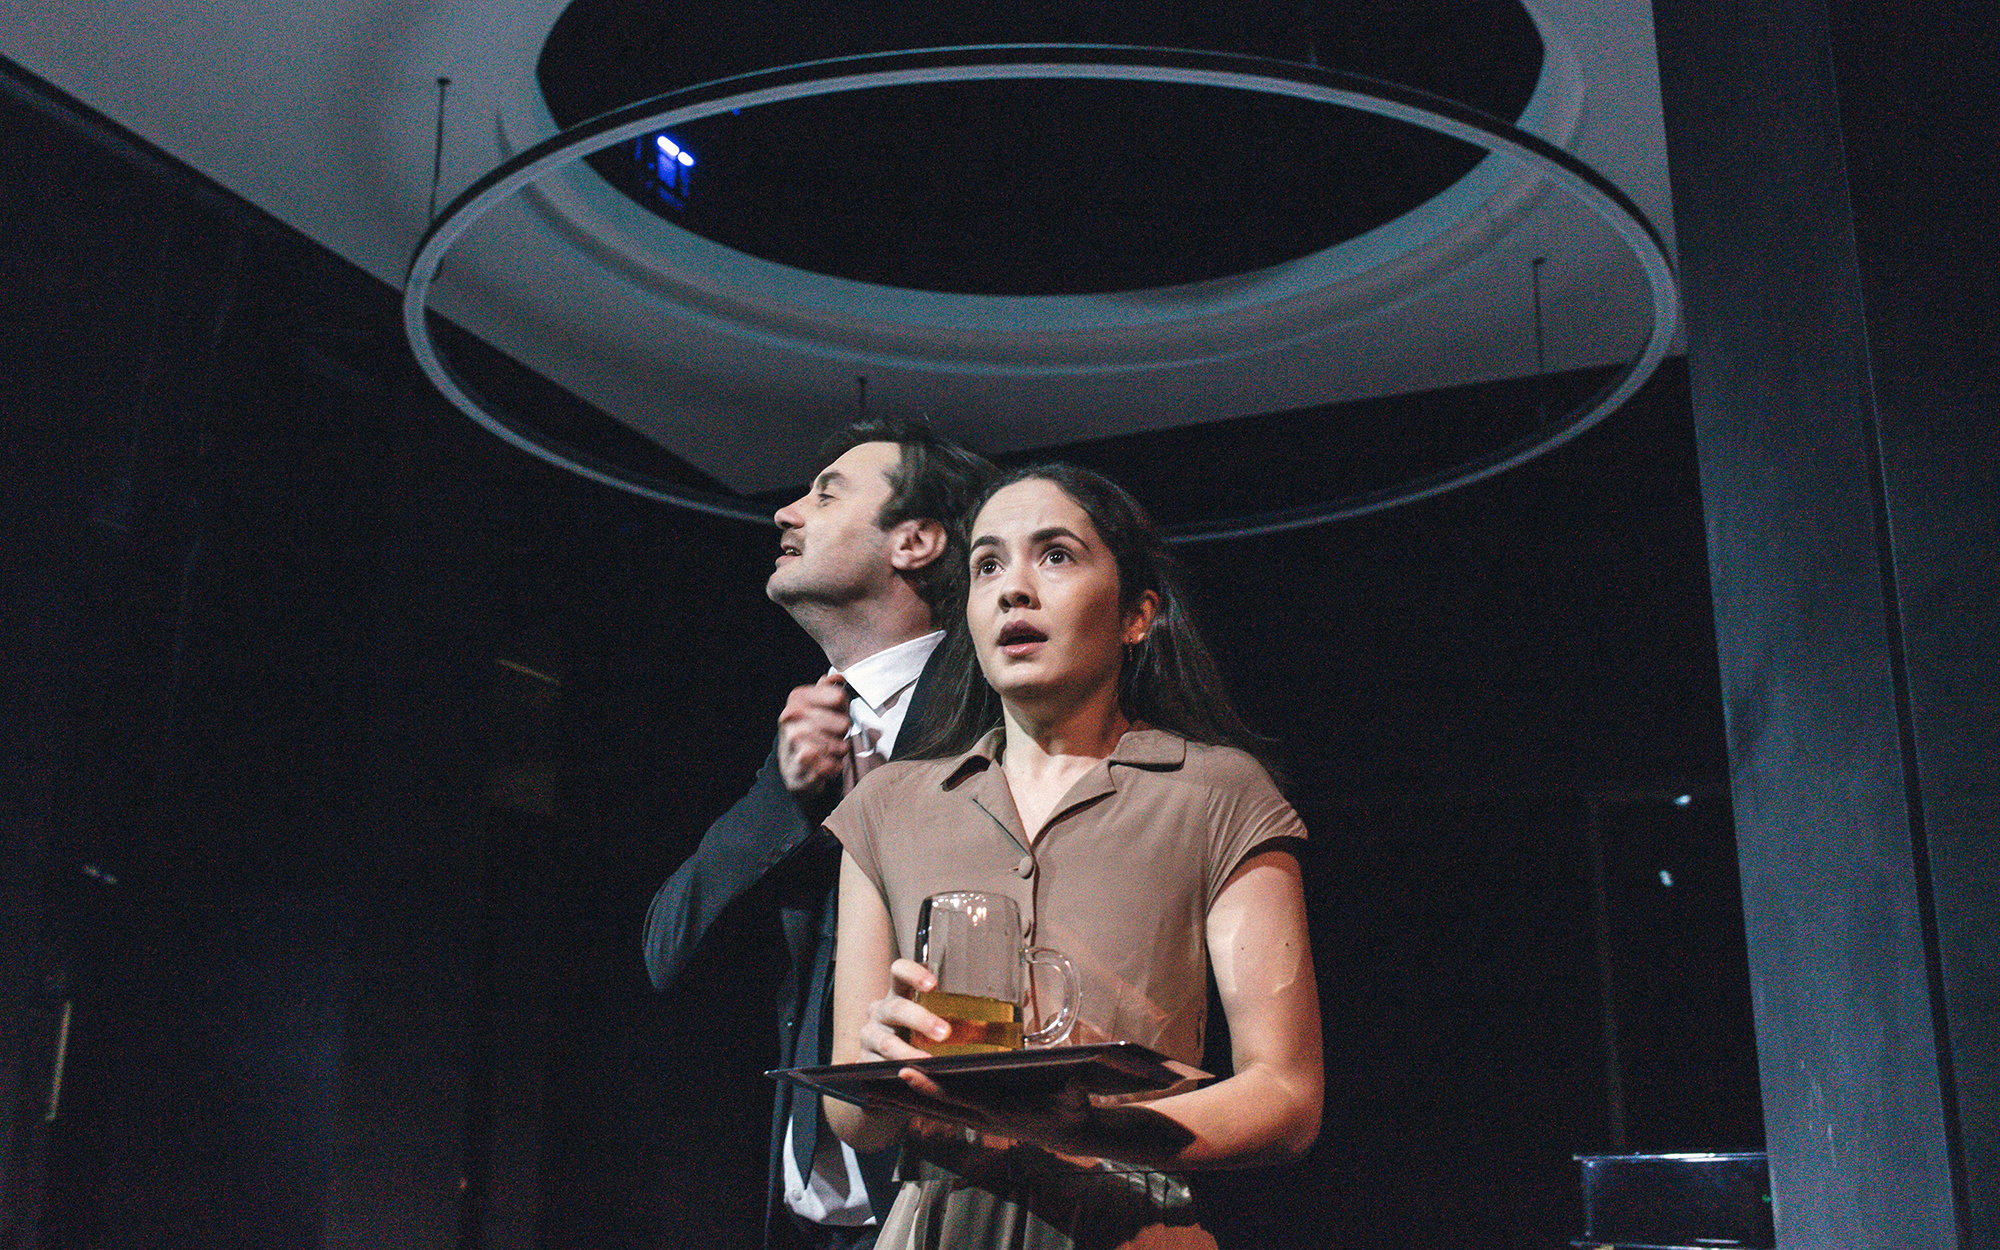 Lopahin Jermolaj Aleksejevič (Branko Jordan) si zateguje kravato pri ovratniku srajce, pred njim stoji Dunjaša (Lara Wolf), vidno vznemirjena, v roki drži pladenj s kozarcem piva.